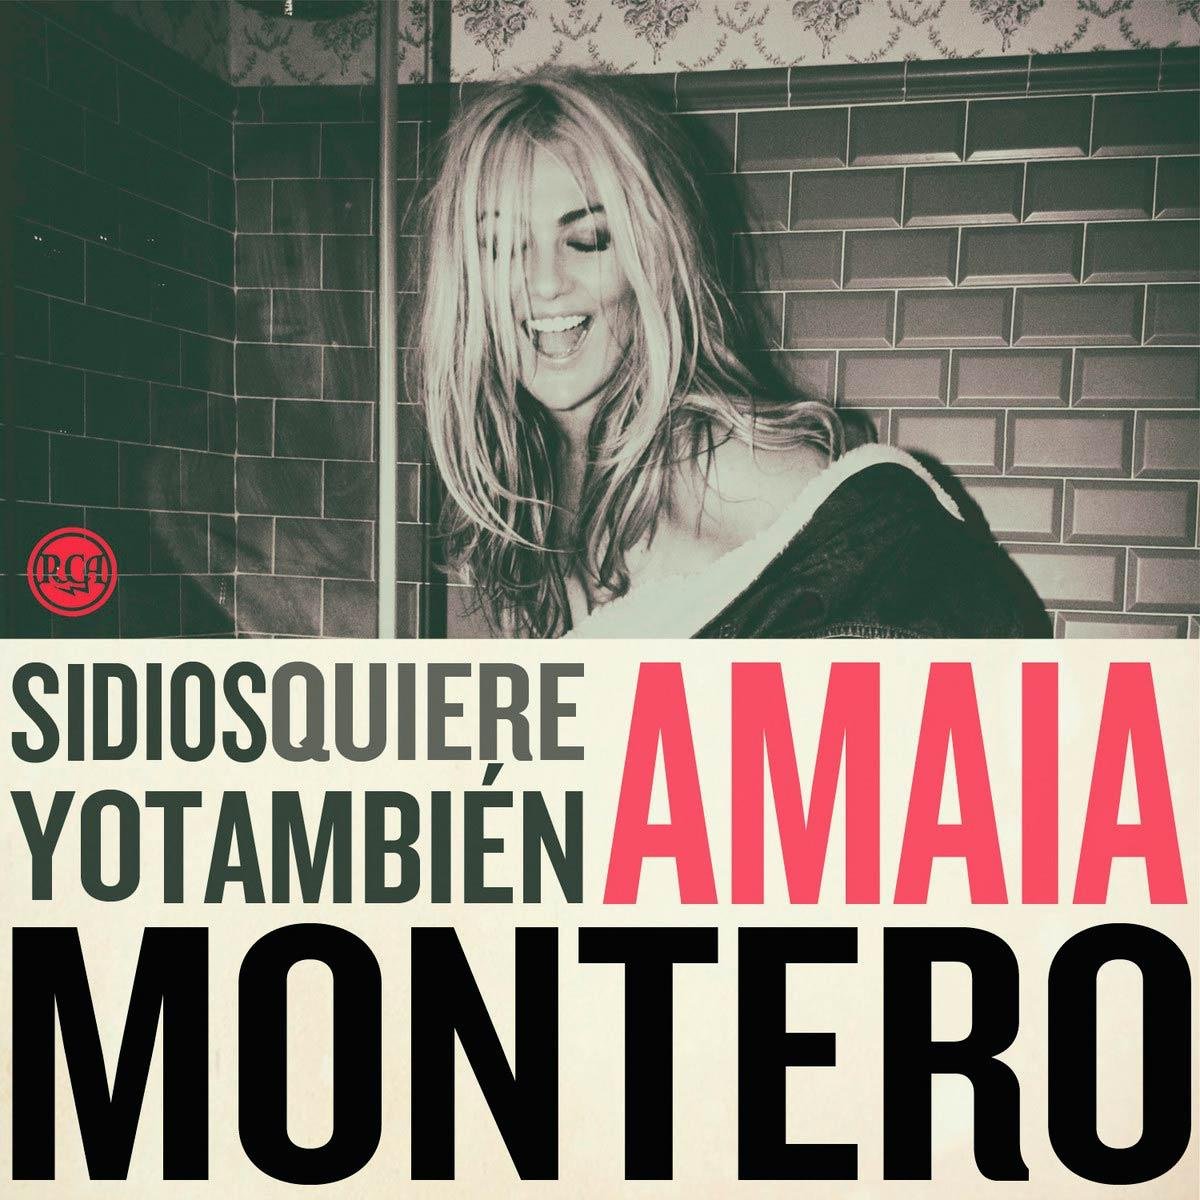 La oreja de van gogh~ Amaia Montero
Las mejores frases de sus canciones :)